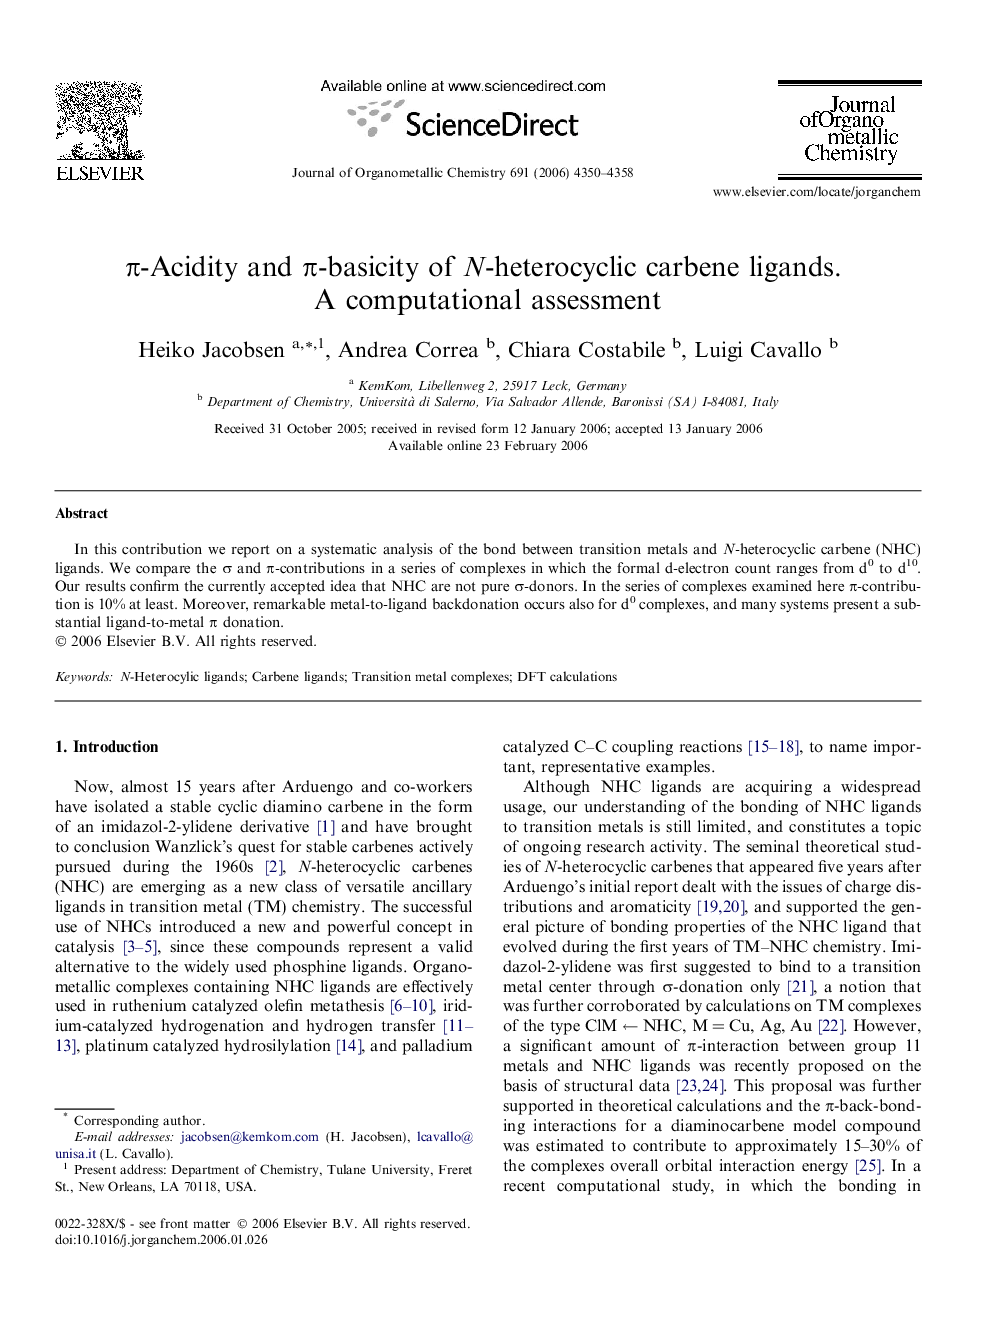 π-Acidity and π-basicity of N-heterocyclic carbene ligands. A computational assessment